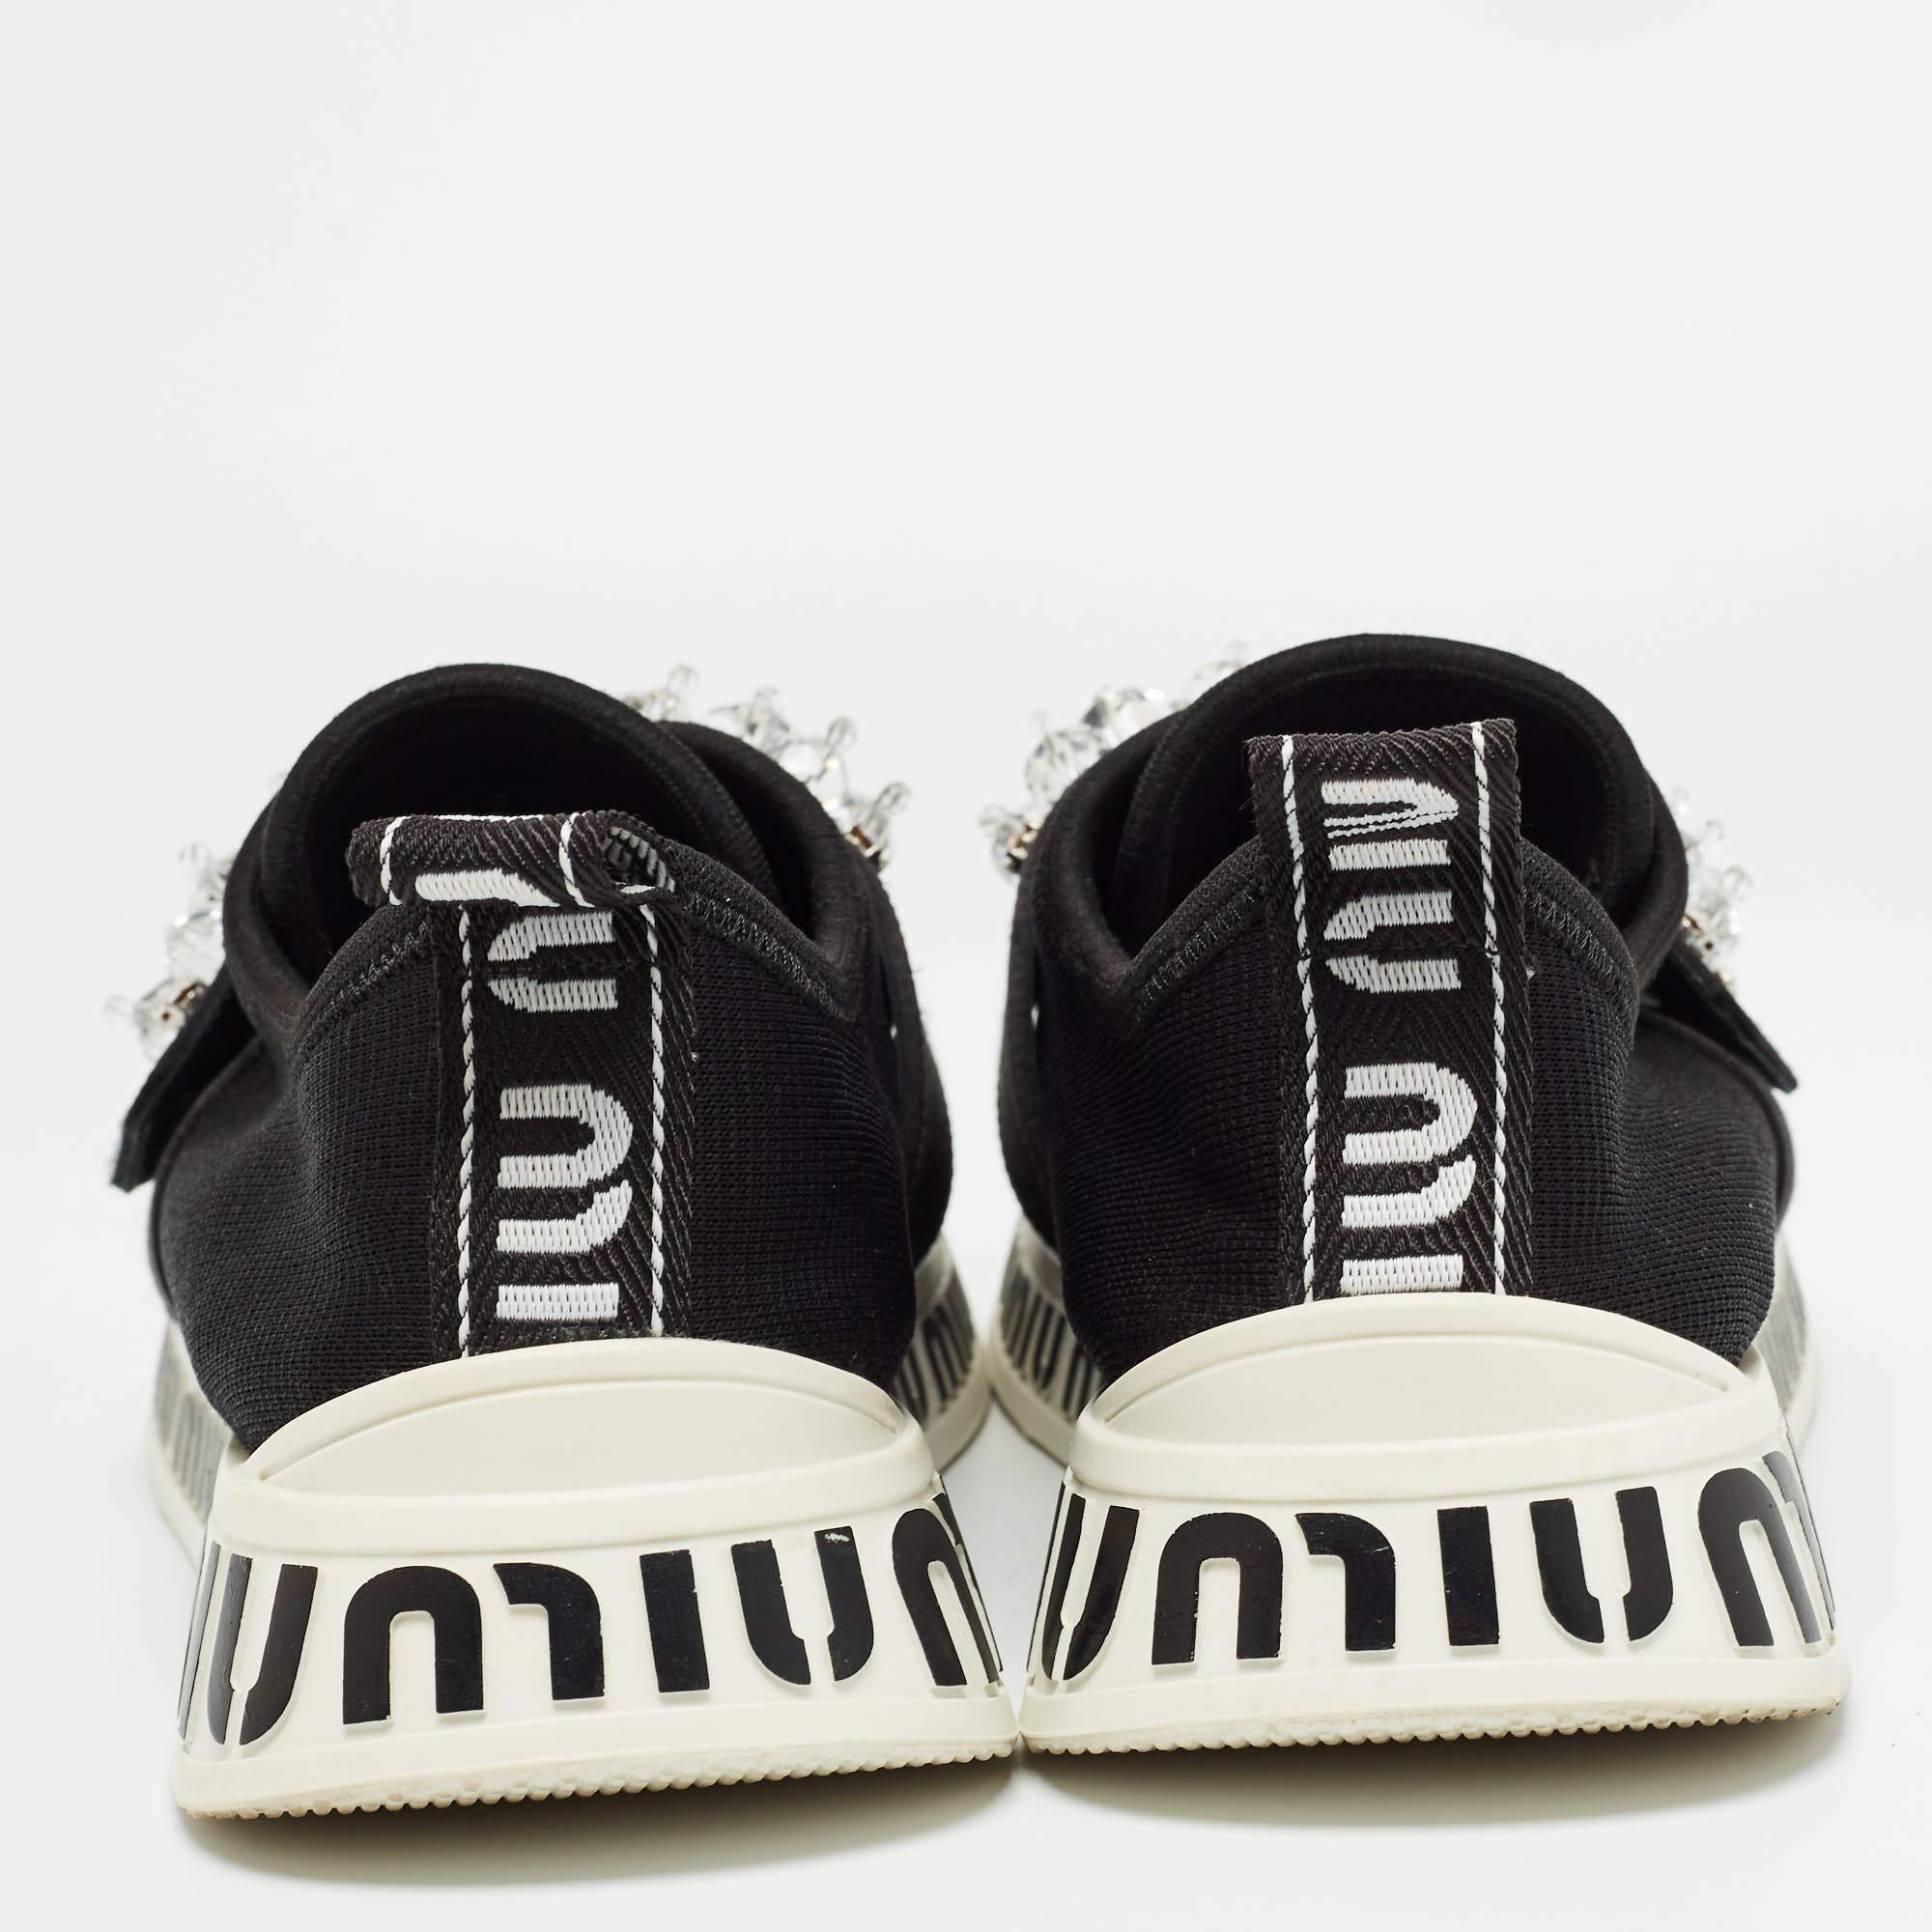 Diese Miu Miu Sneakers sind aus den besten MATERIALEN gefertigt und mit einer auffälligen Kristallverzierung auf der Oberseite versehen, um Ihren Stil zu unterstreichen und Ihnen gleichzeitig Komfort zu bieten. Kombinieren Sie sie mit Ihrer